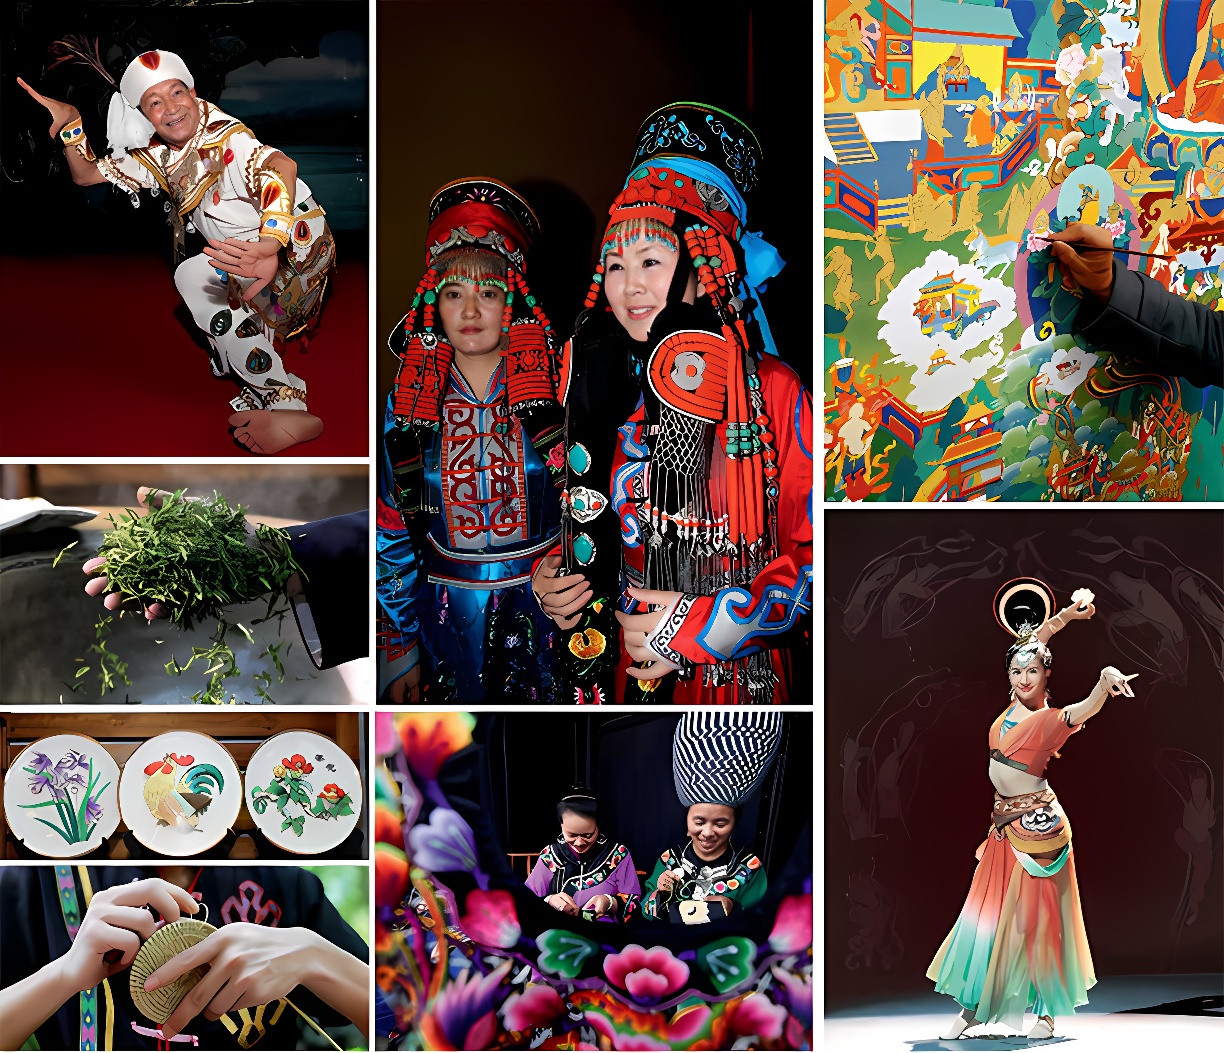 图片展示多元文化场景：欢快的舞者、传统服饰的人物、艺术创作、农业劳作、饮食制作、舞台表演，丰富多彩的生活片段。